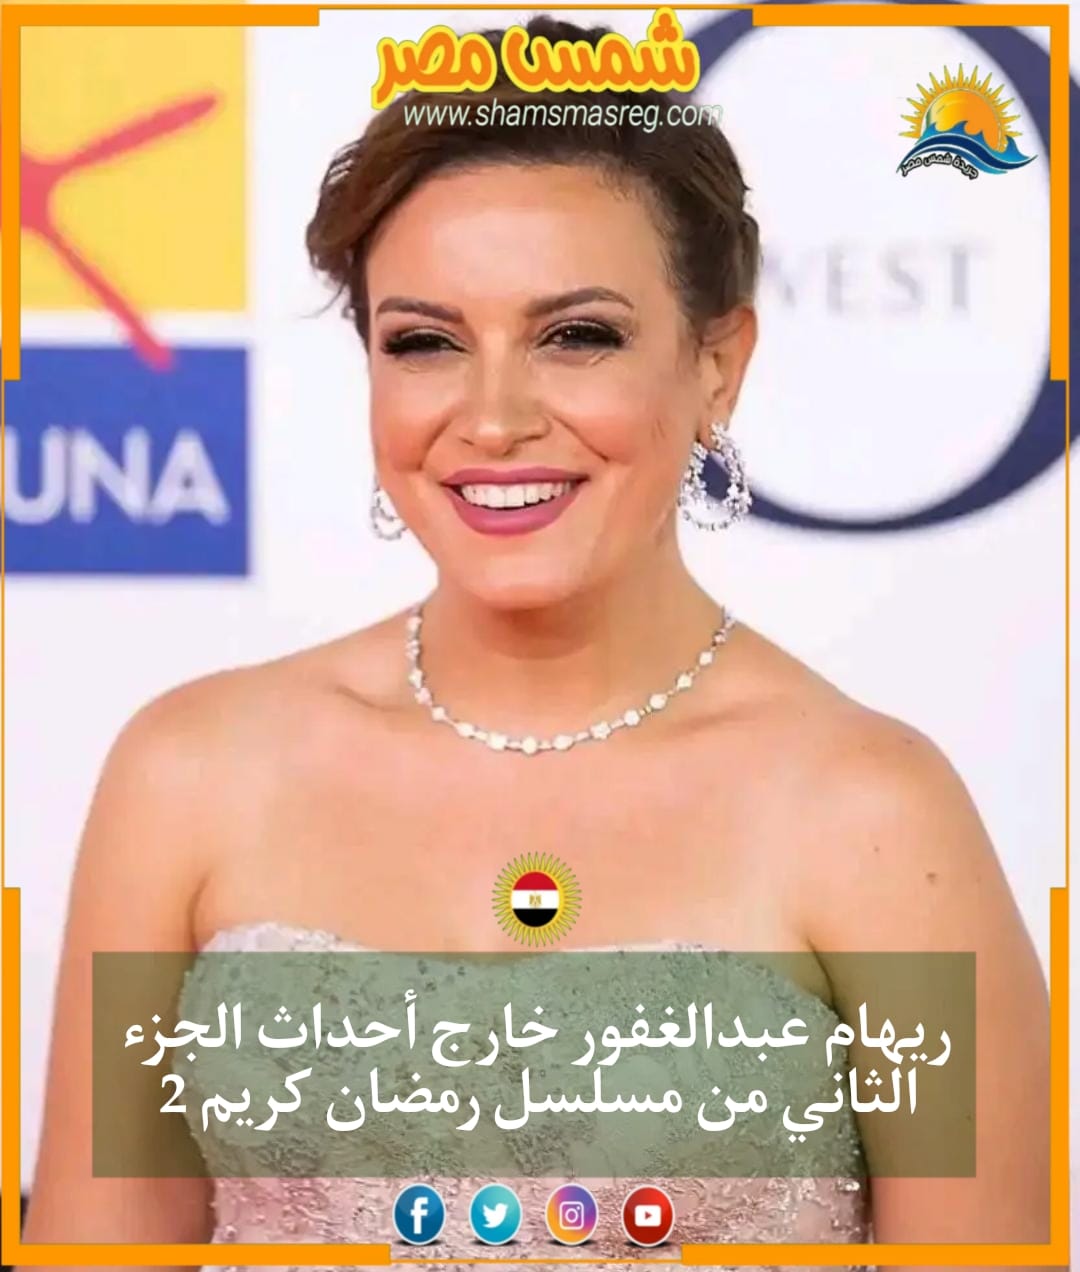 |شمس مصر|.. ريهام عبدالغفور خارج أحداث الجزء الثاني من مسلسل رمضان كريم 2